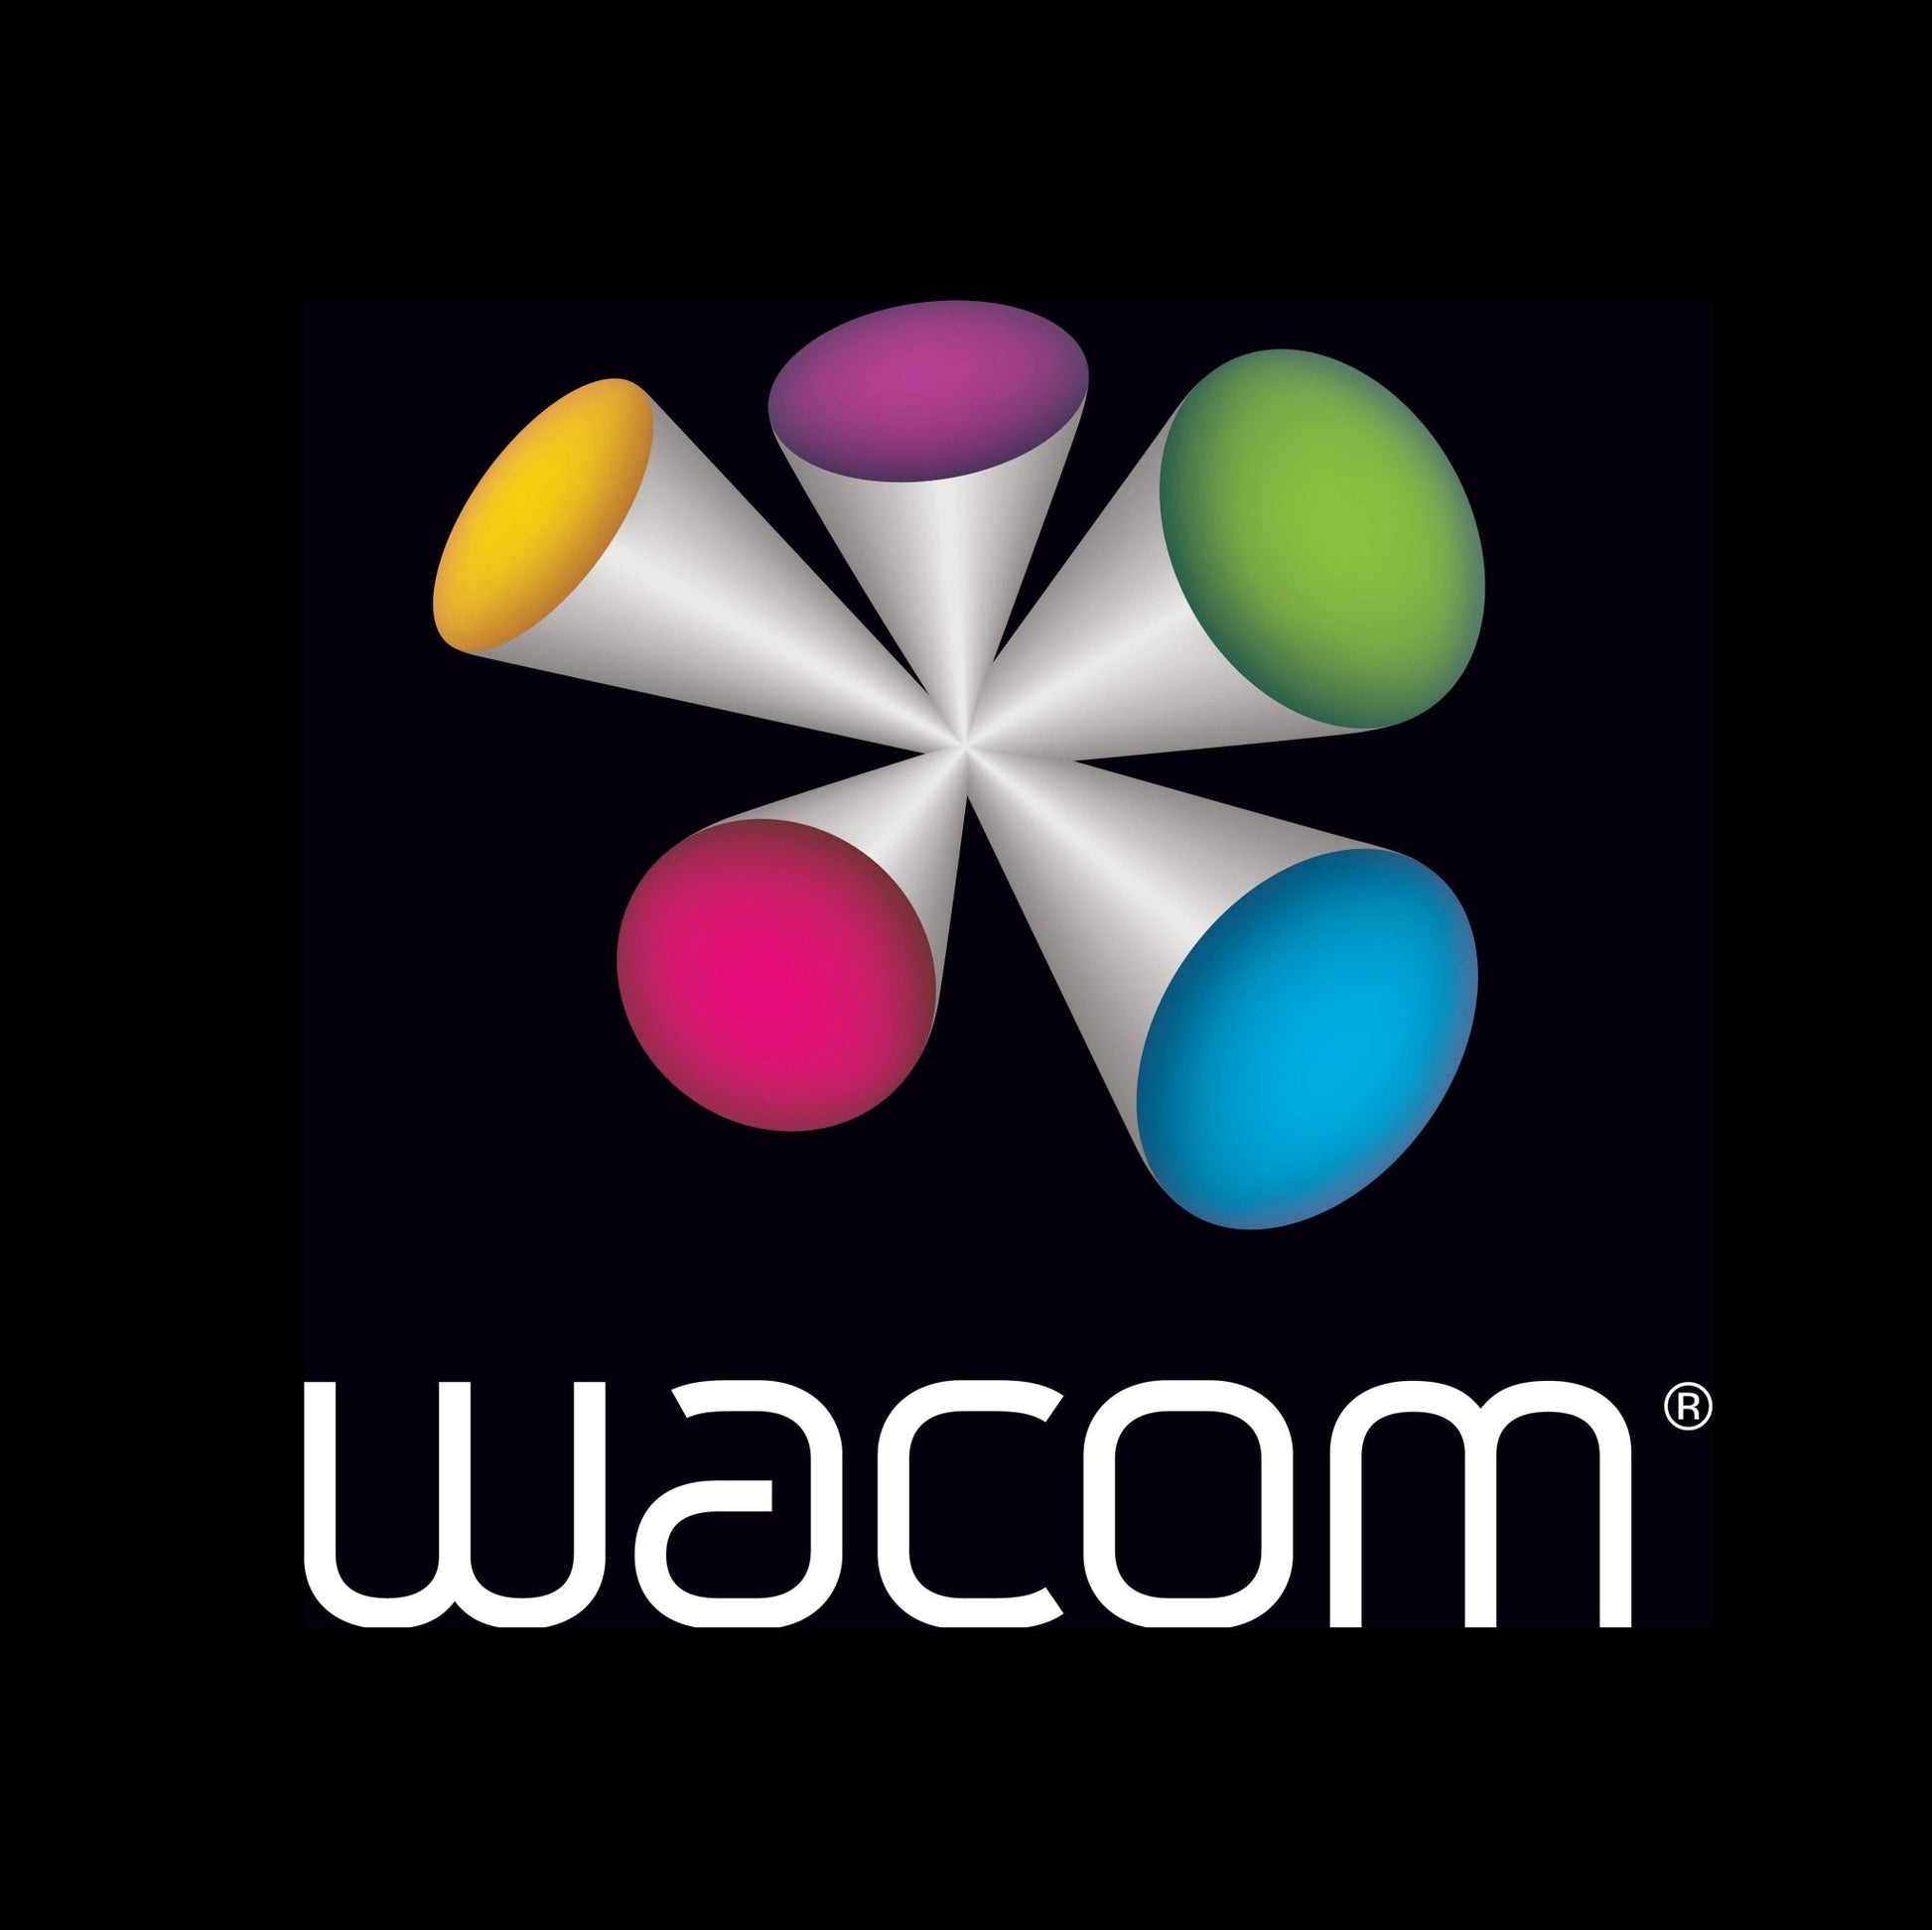 Wacom Bamboo Spark With gadget pocket - NOORHS Latinoamérica, S.A. de C.V.